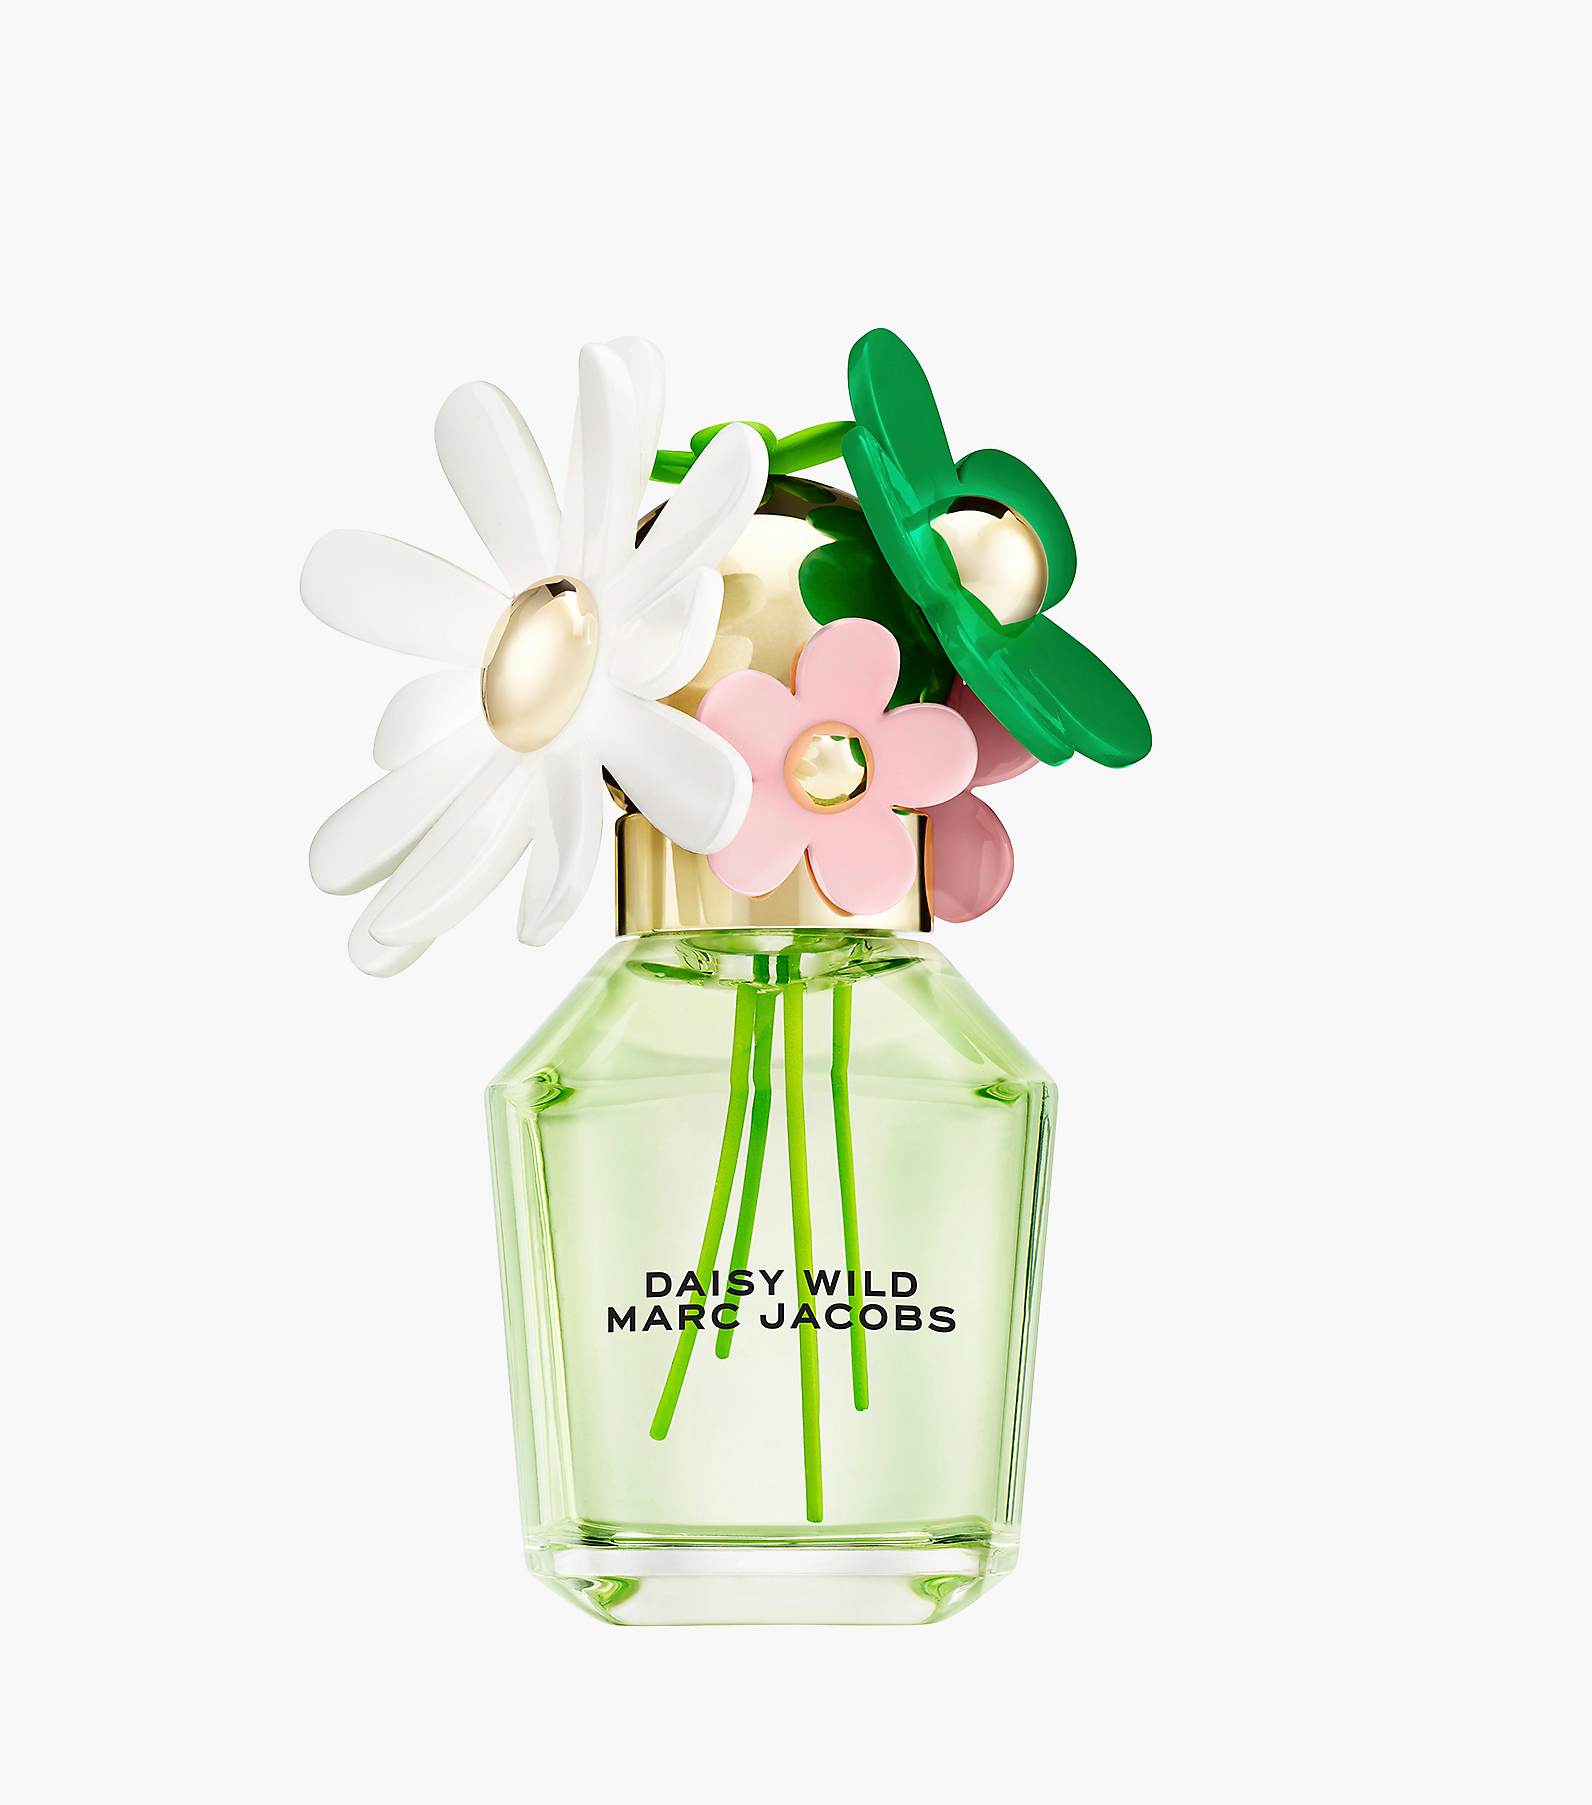 Daisy Wild Eau De Parfum 1.7 oz, Marc Jacobs